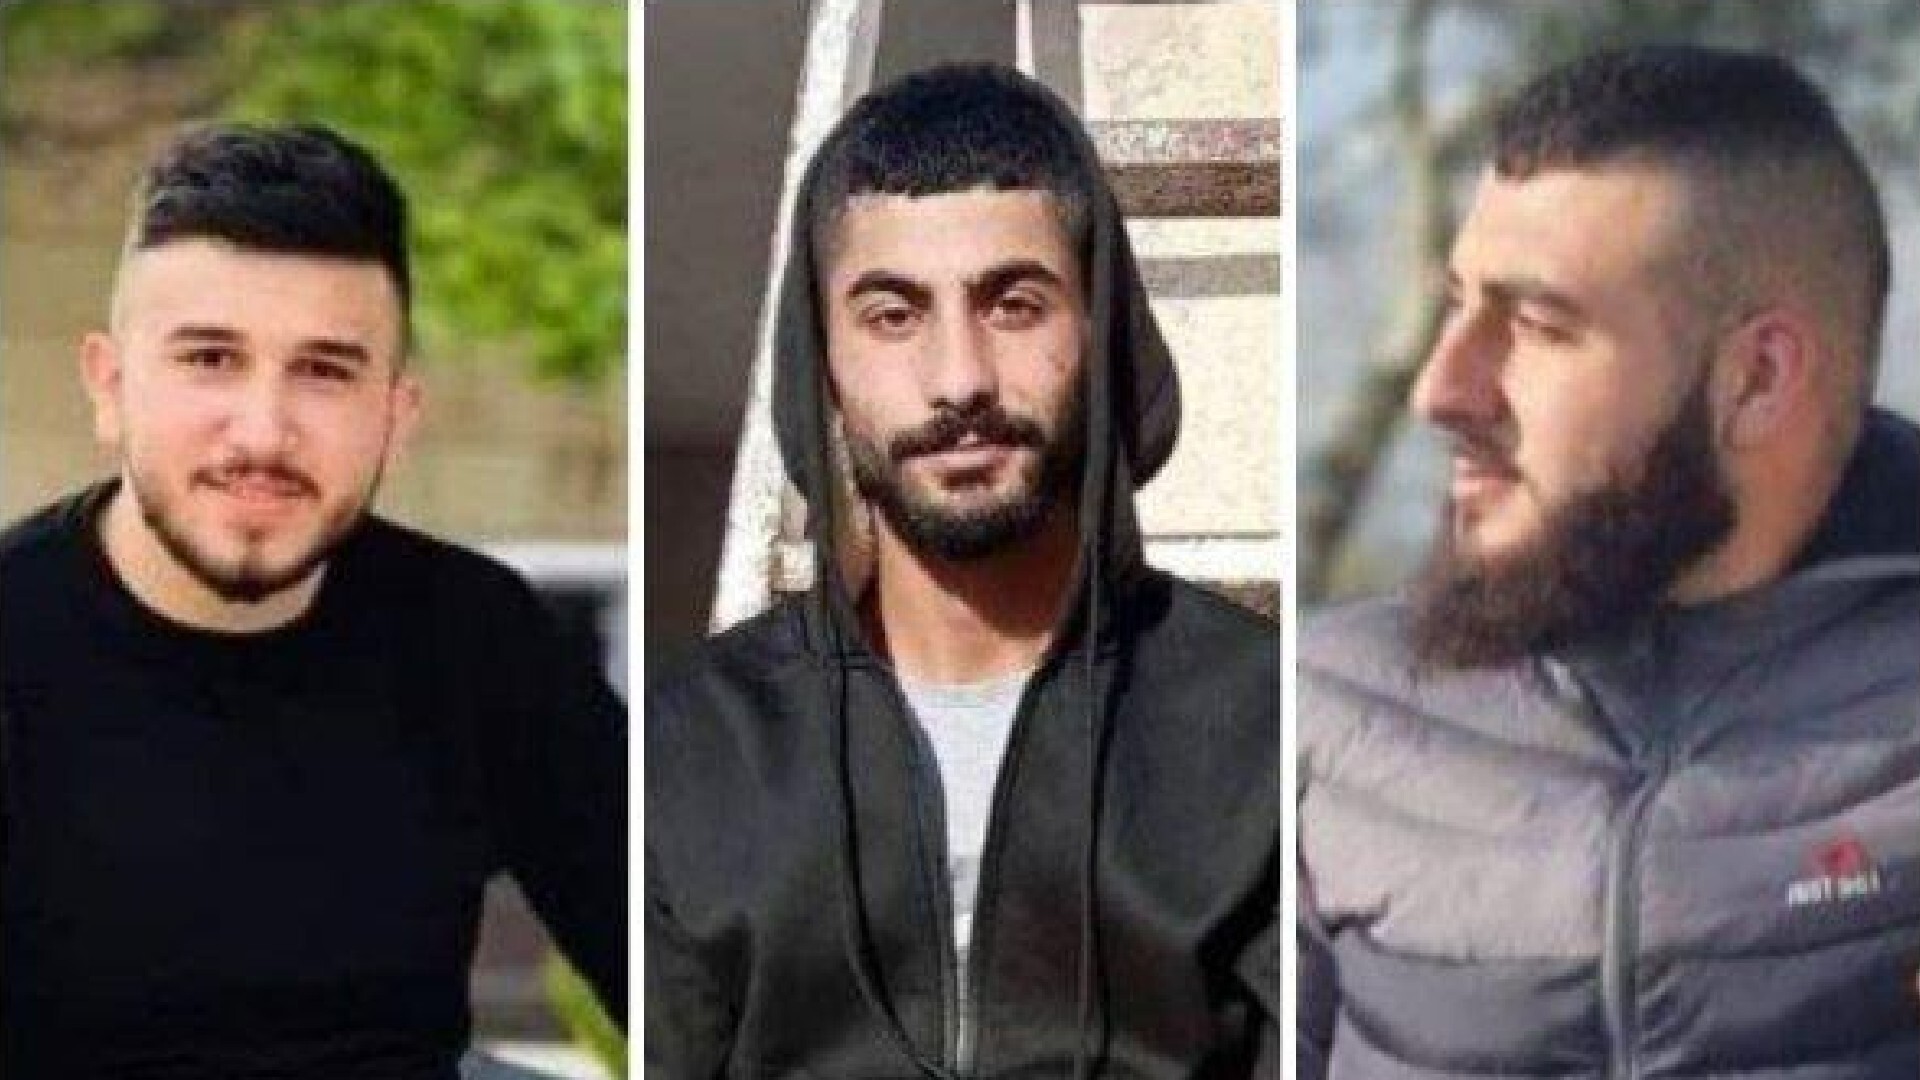 Yazan Samer al-Jaabari, Izz Eddin Basem Hamamreh, and Amjad Adnan Khalilieh